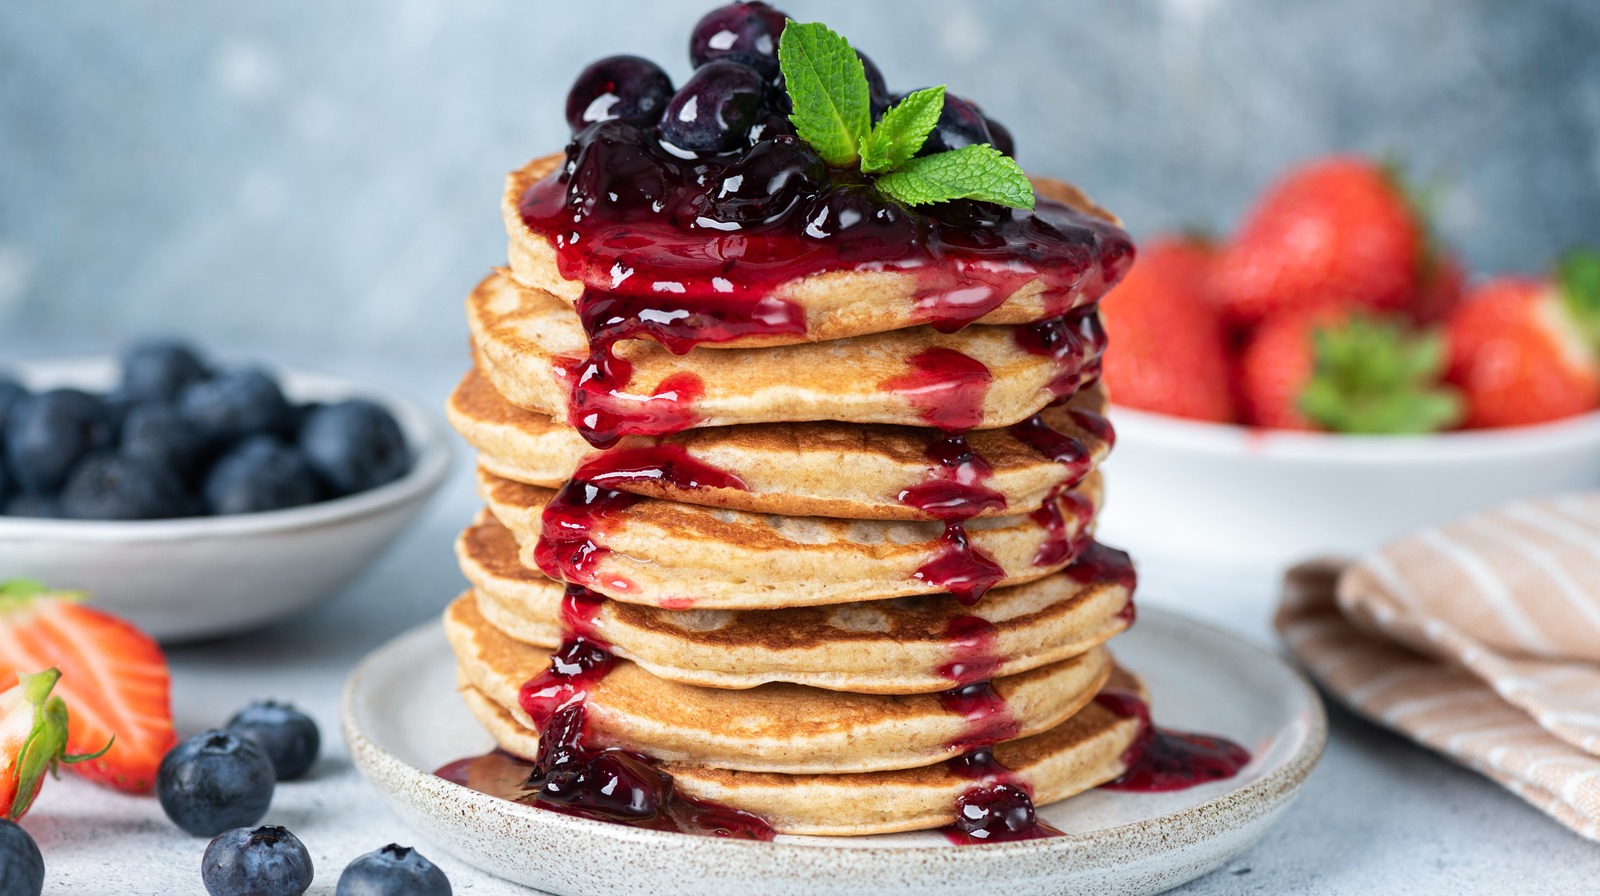 National Pancake Day: Gordon Ramsay Demonstrates 'Most Amazing' Pancakes